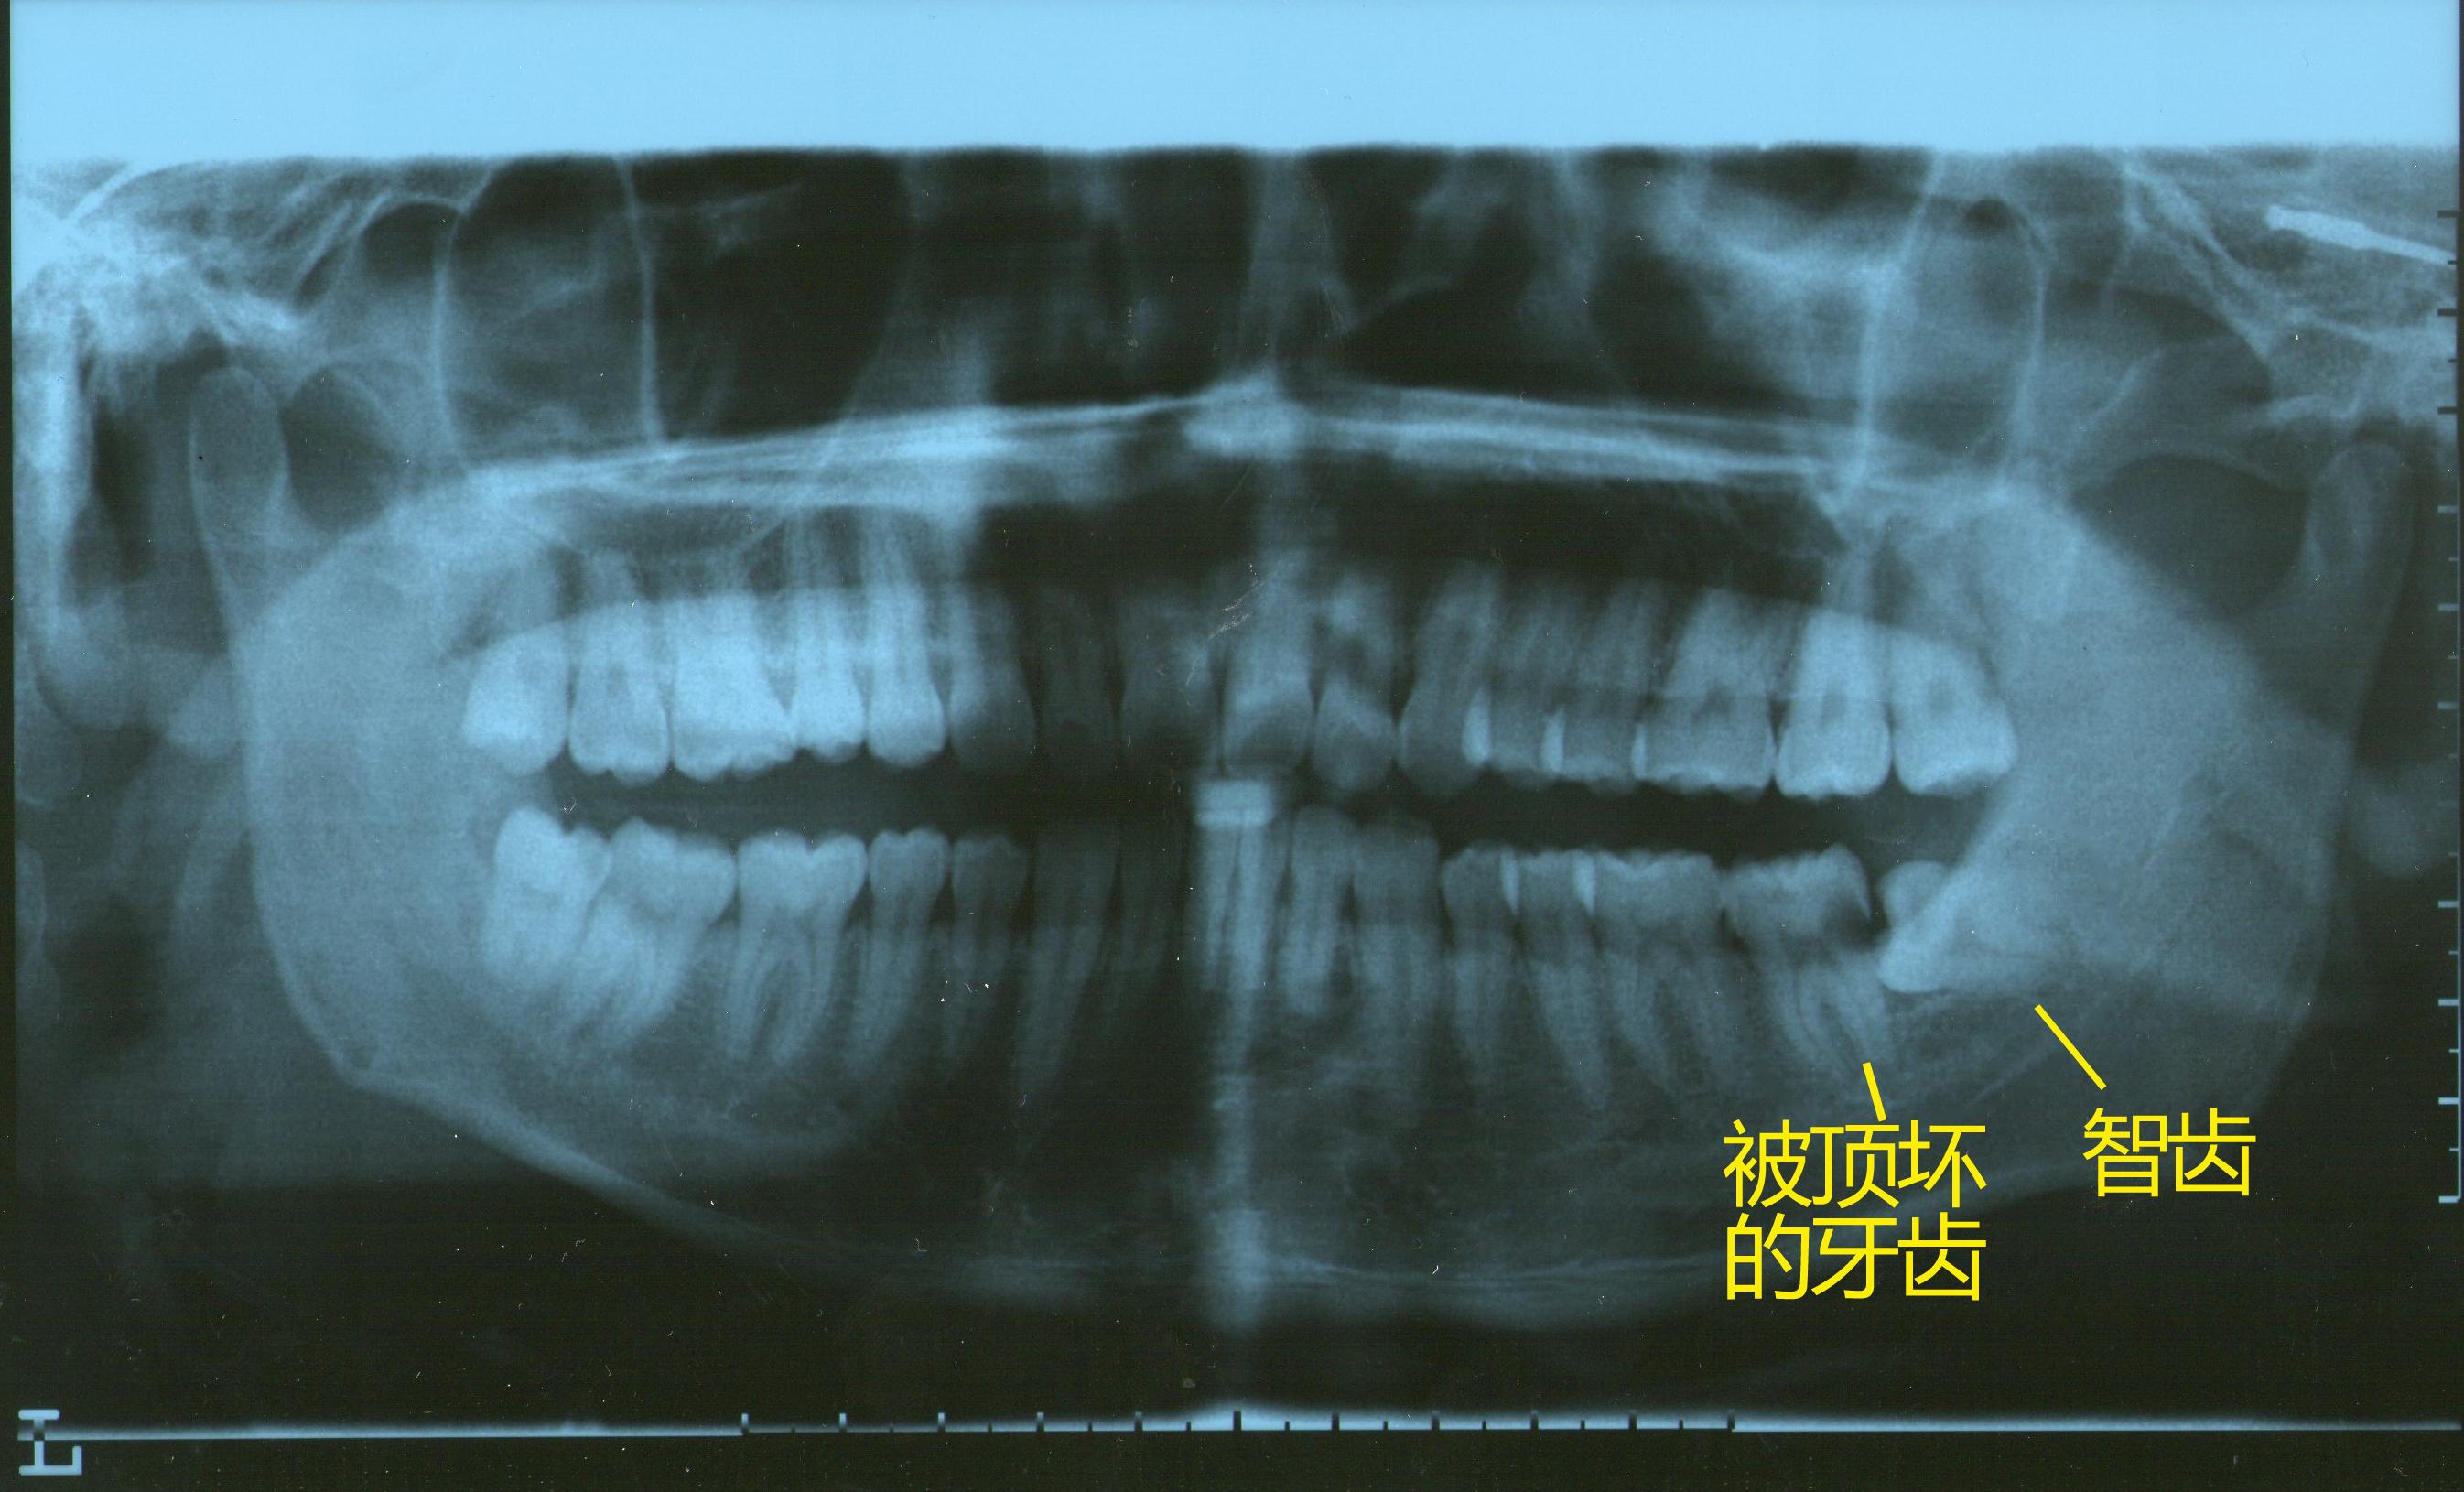 这是医院做的的牙齿曲面全片,显示:由于右下智齿的横向生长,顶坏了